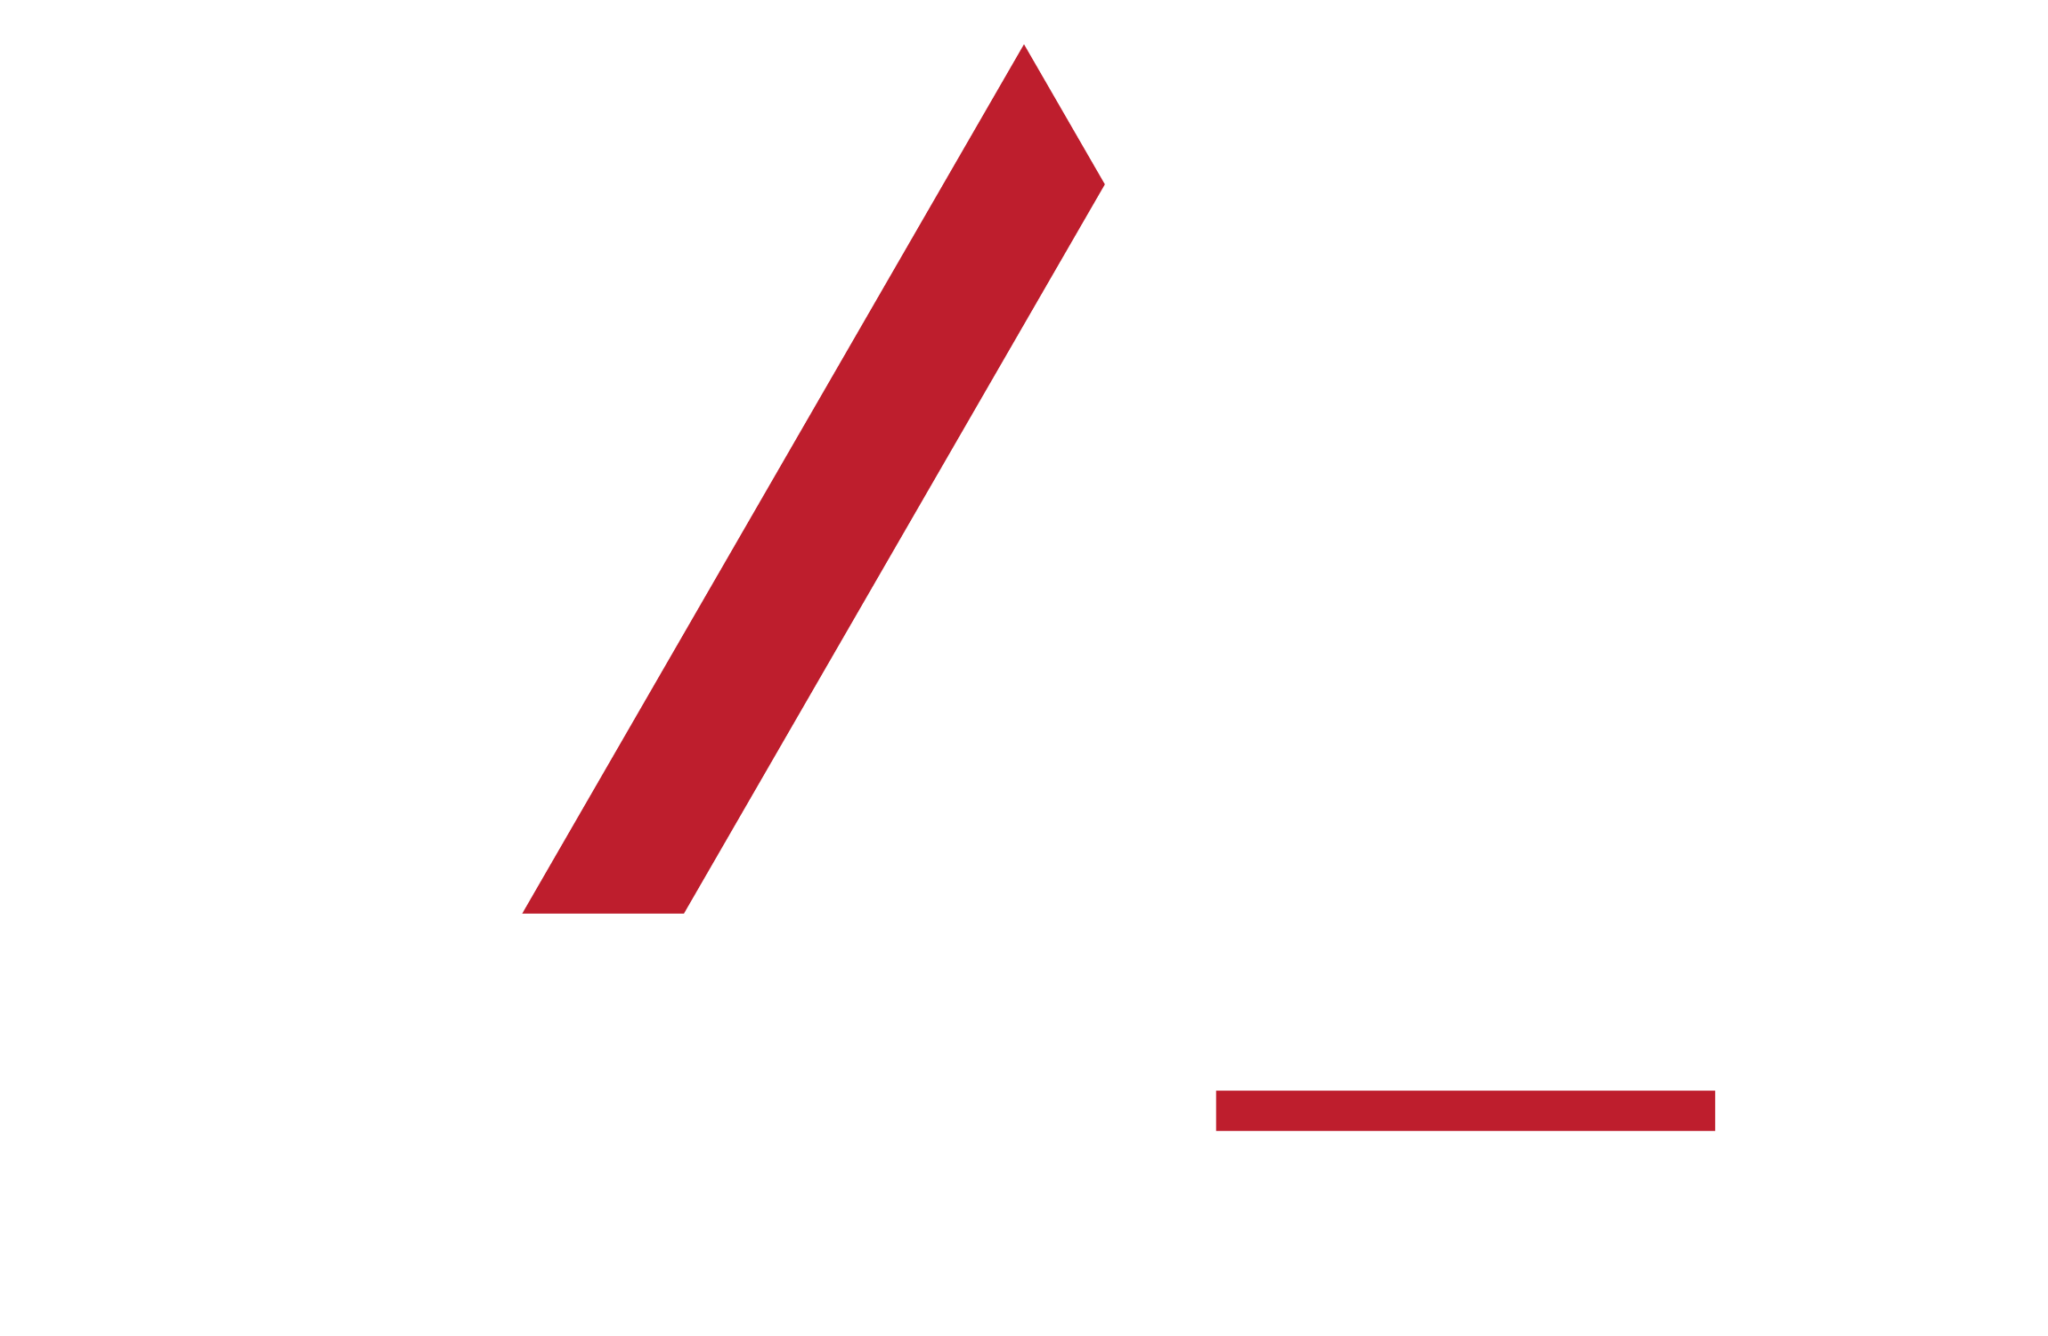 acegeek Logo 2048x1336 1